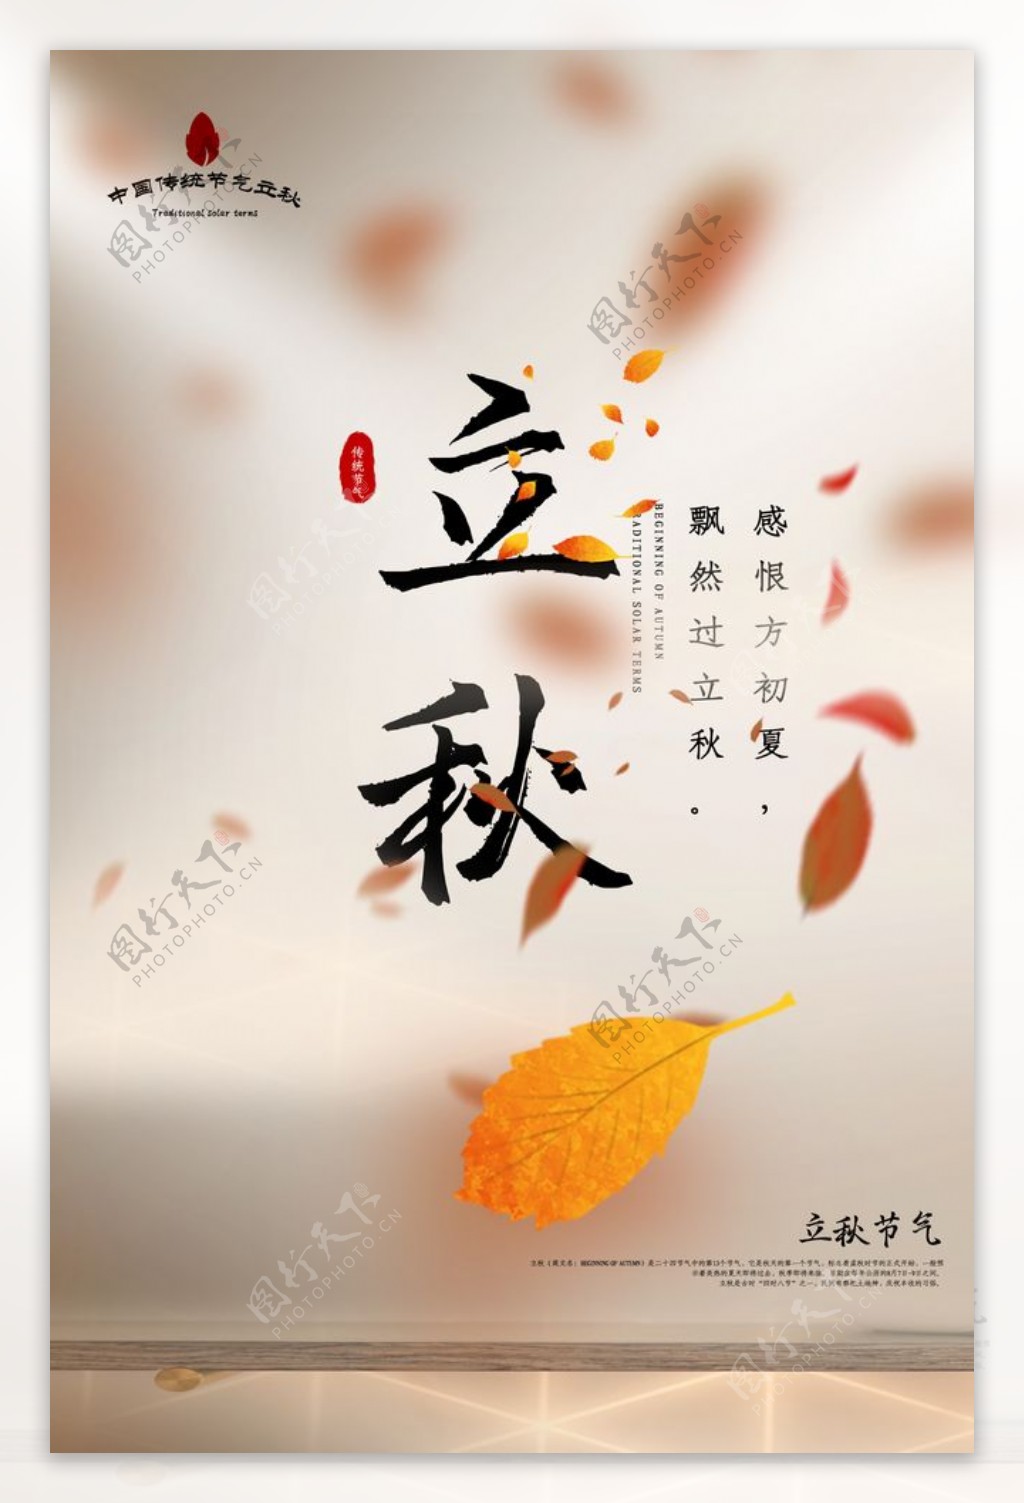 立秋传统节日活动宣传海报素材